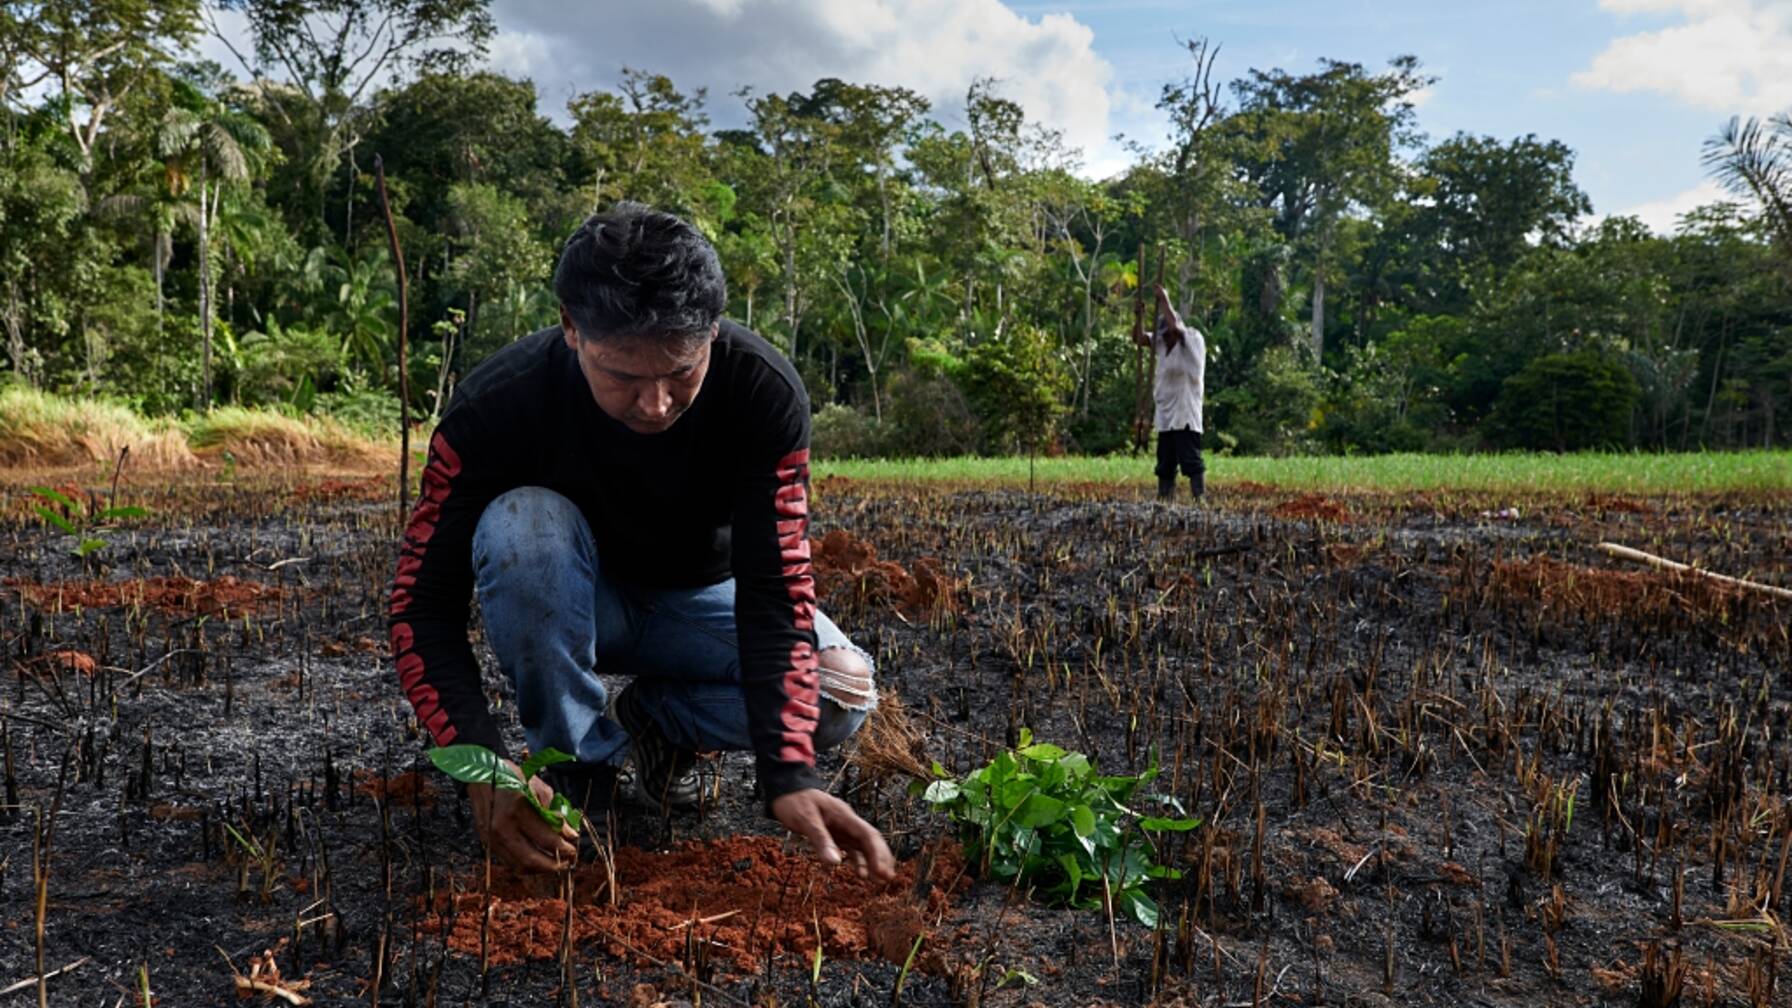 Javier Pinto e suo padre piantano arbusti di caffè, platani e alberi di agrumi nel loro campo ripulito dopo la debbiatura.